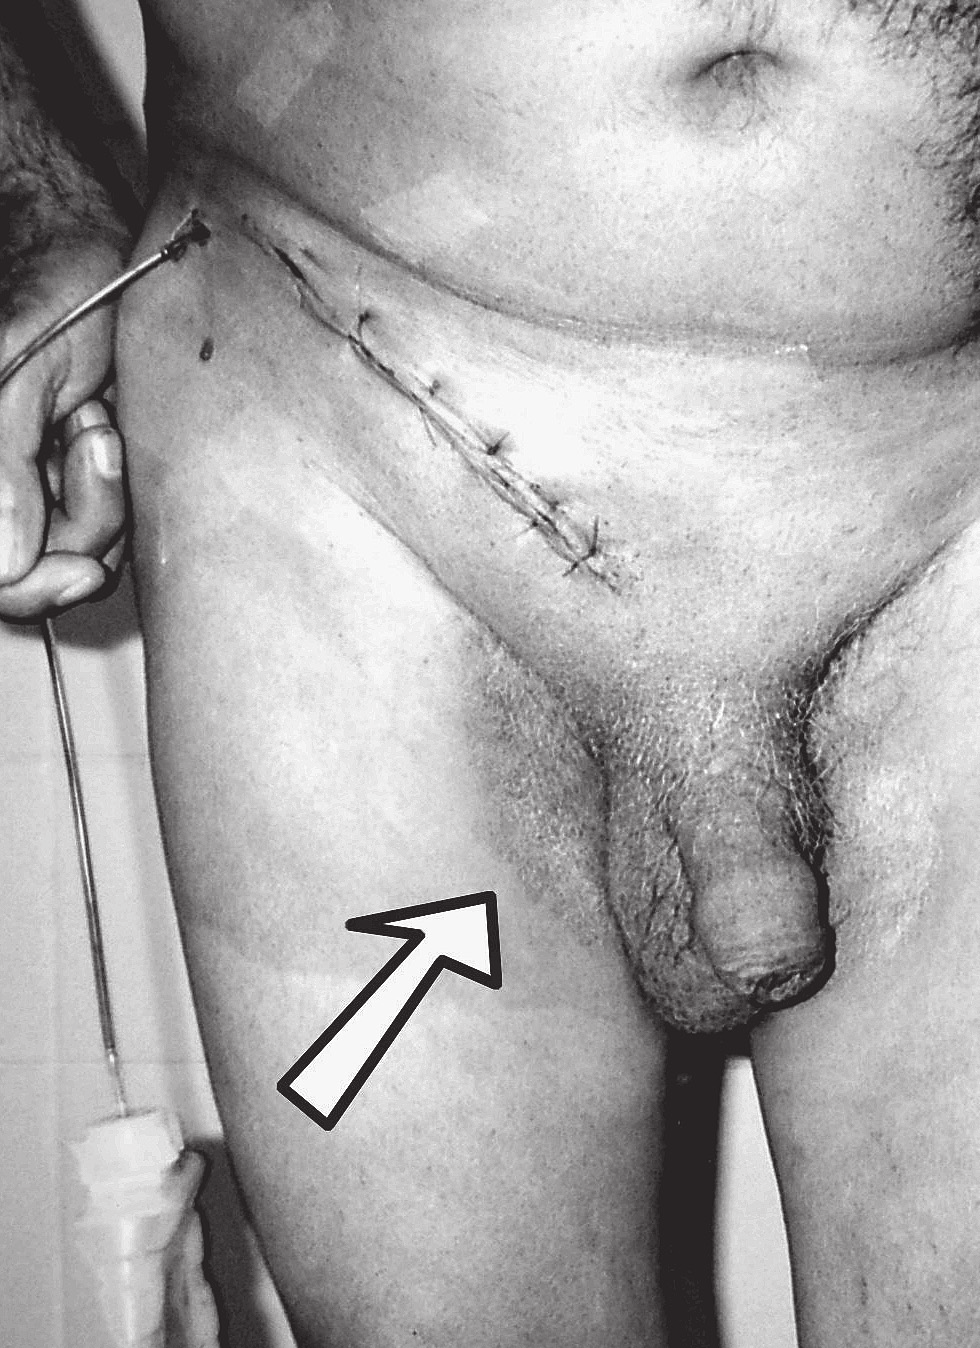 K., aged 68, before (A) and 24h after the operation (B) stosowania szwów wchłanialnych; dodatkowo w przebiegu pooperacyjnym wystąpiły powikłania zapalne, które zawsze, niezależnie od rodzaju techniki